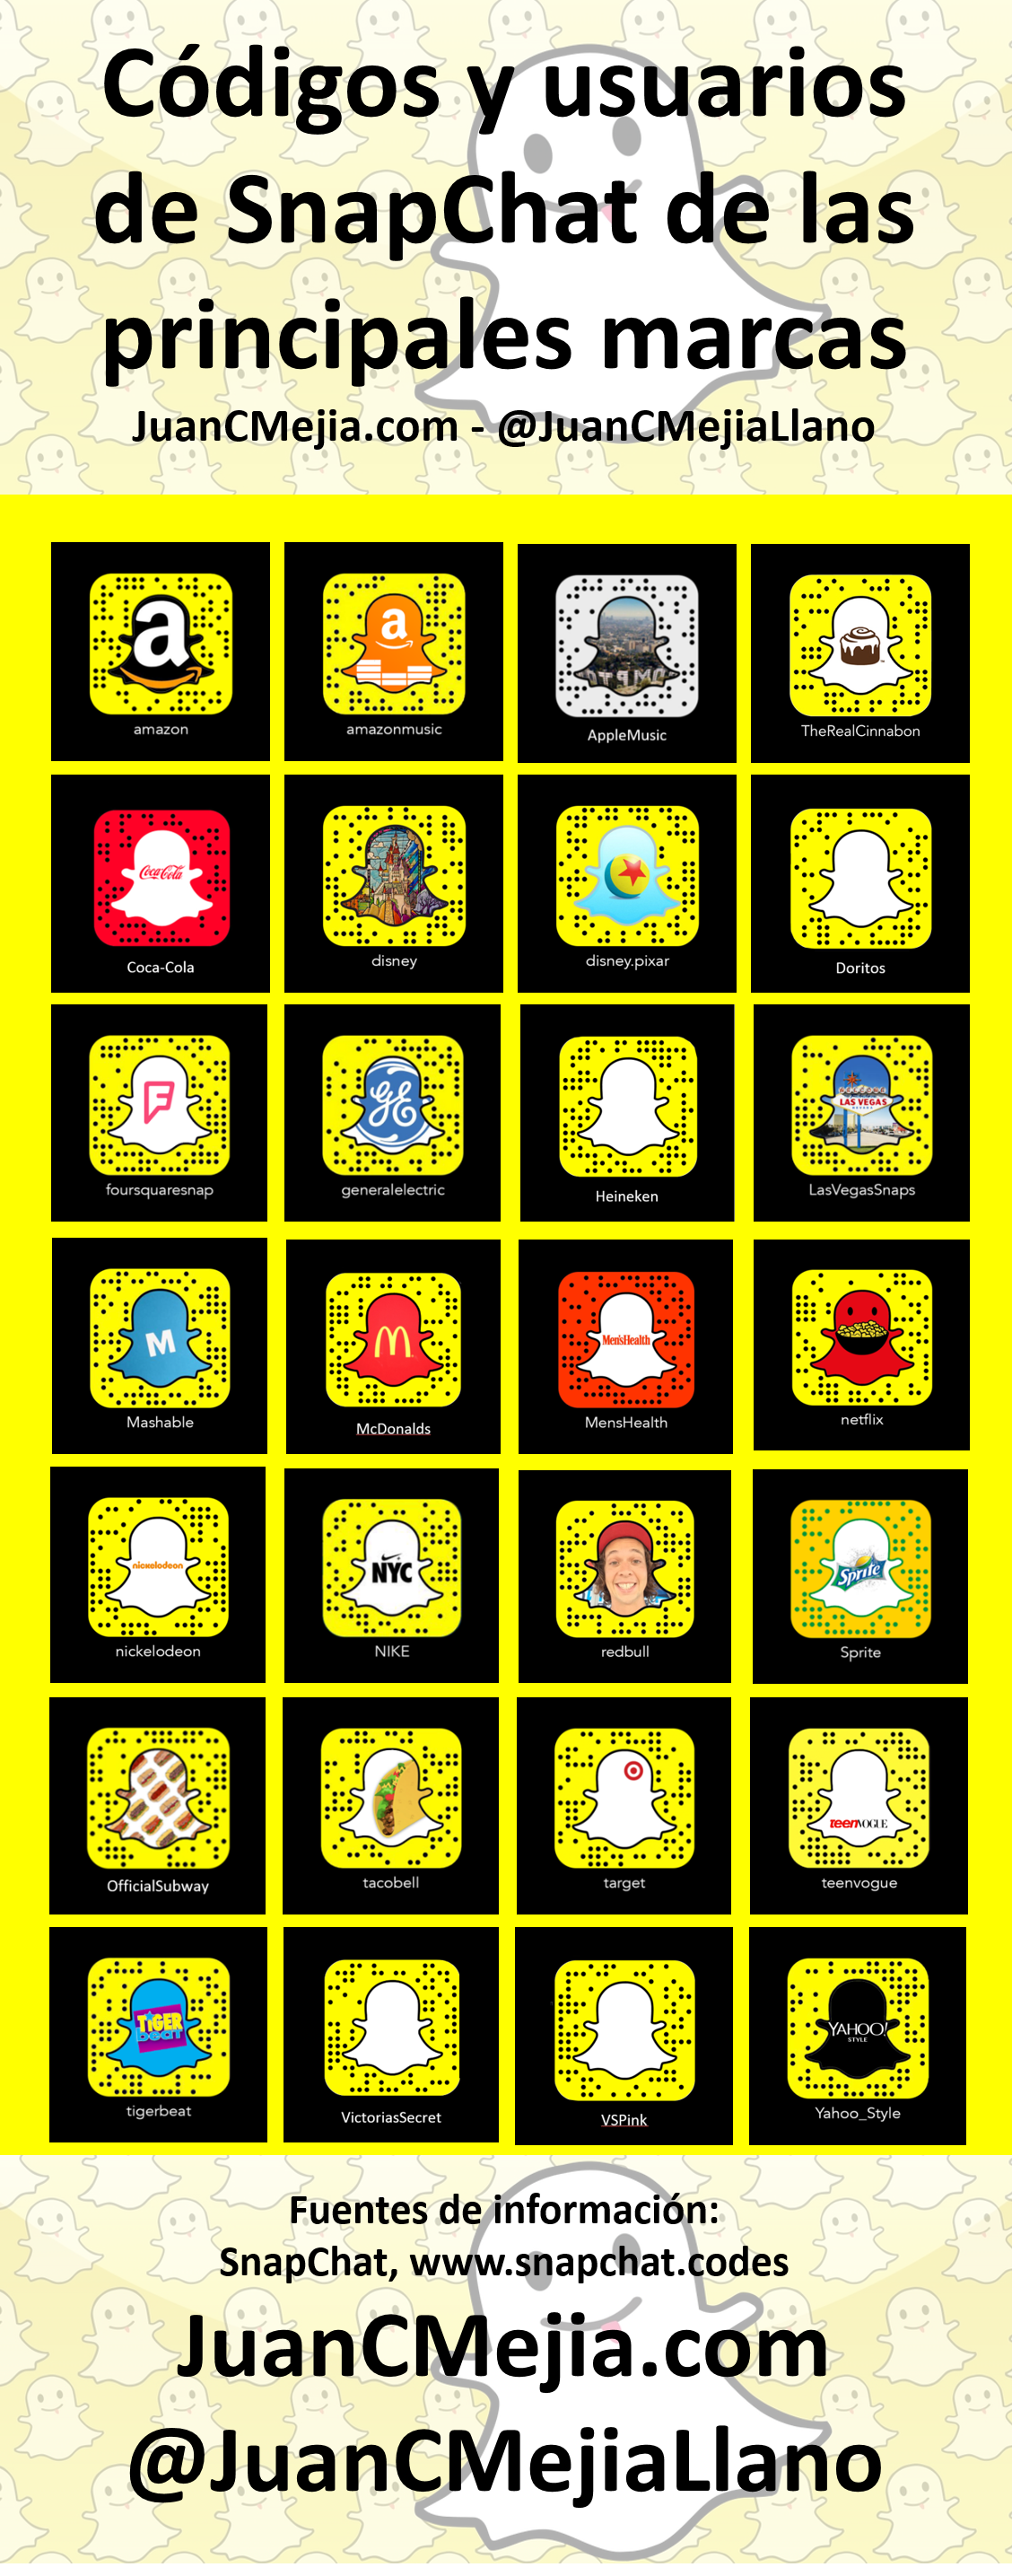 Código Snapchat de las principales marcas